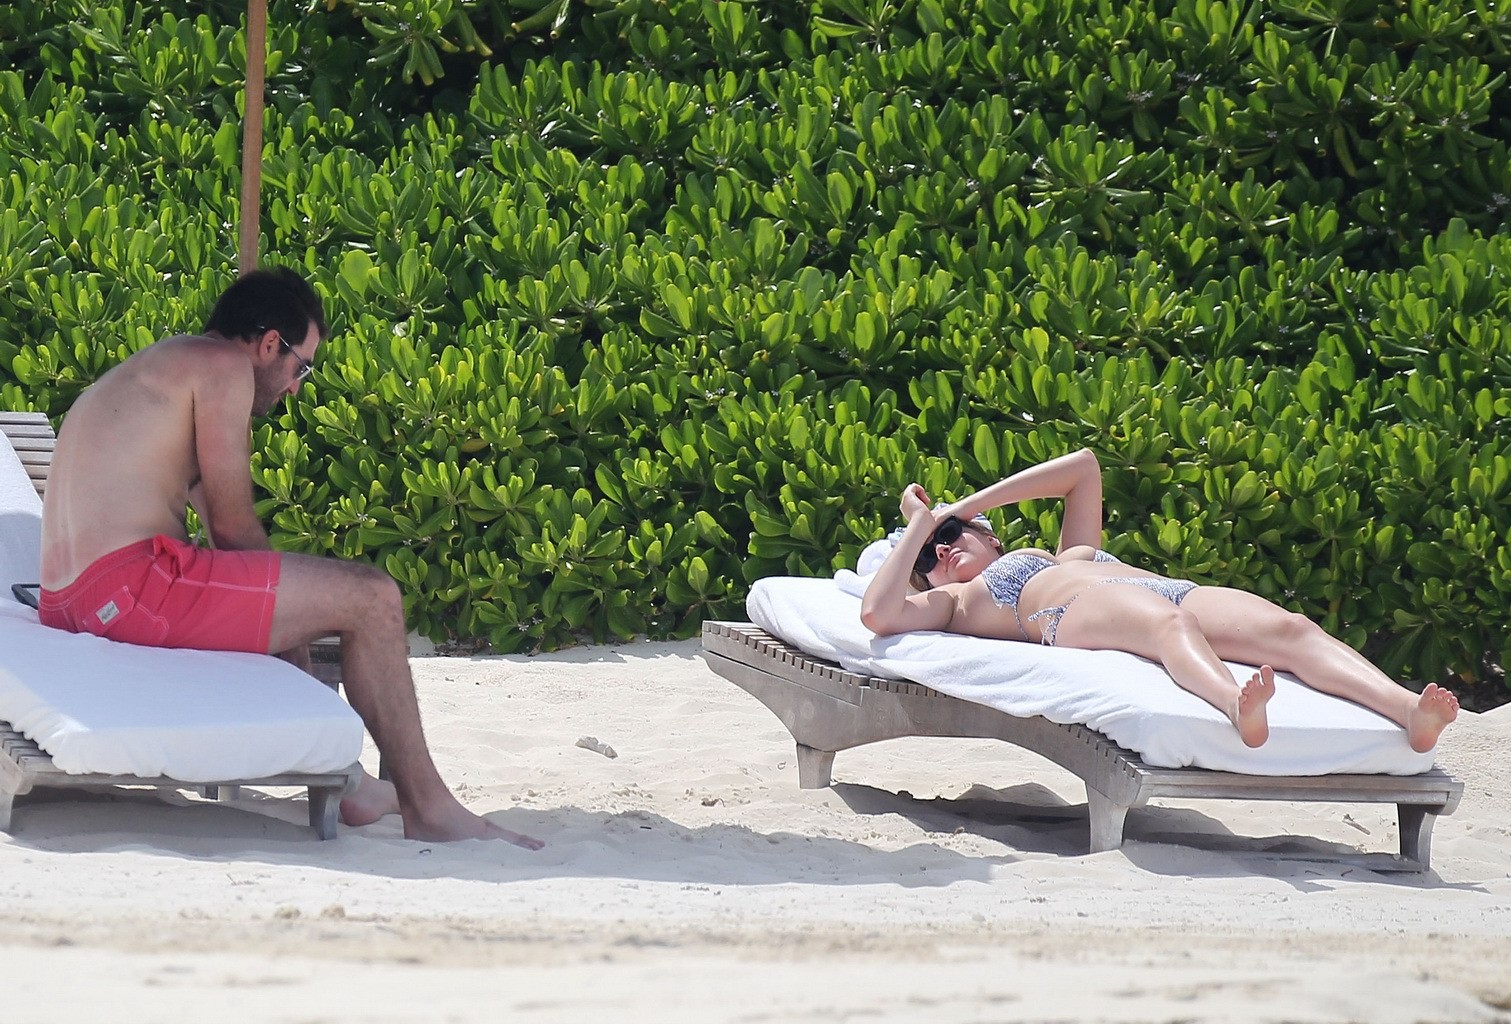 Kate upton che abbronza i suoi meloni lattei e il suo culo in bikini d'argento alla spiaggia in mex
 #75190867